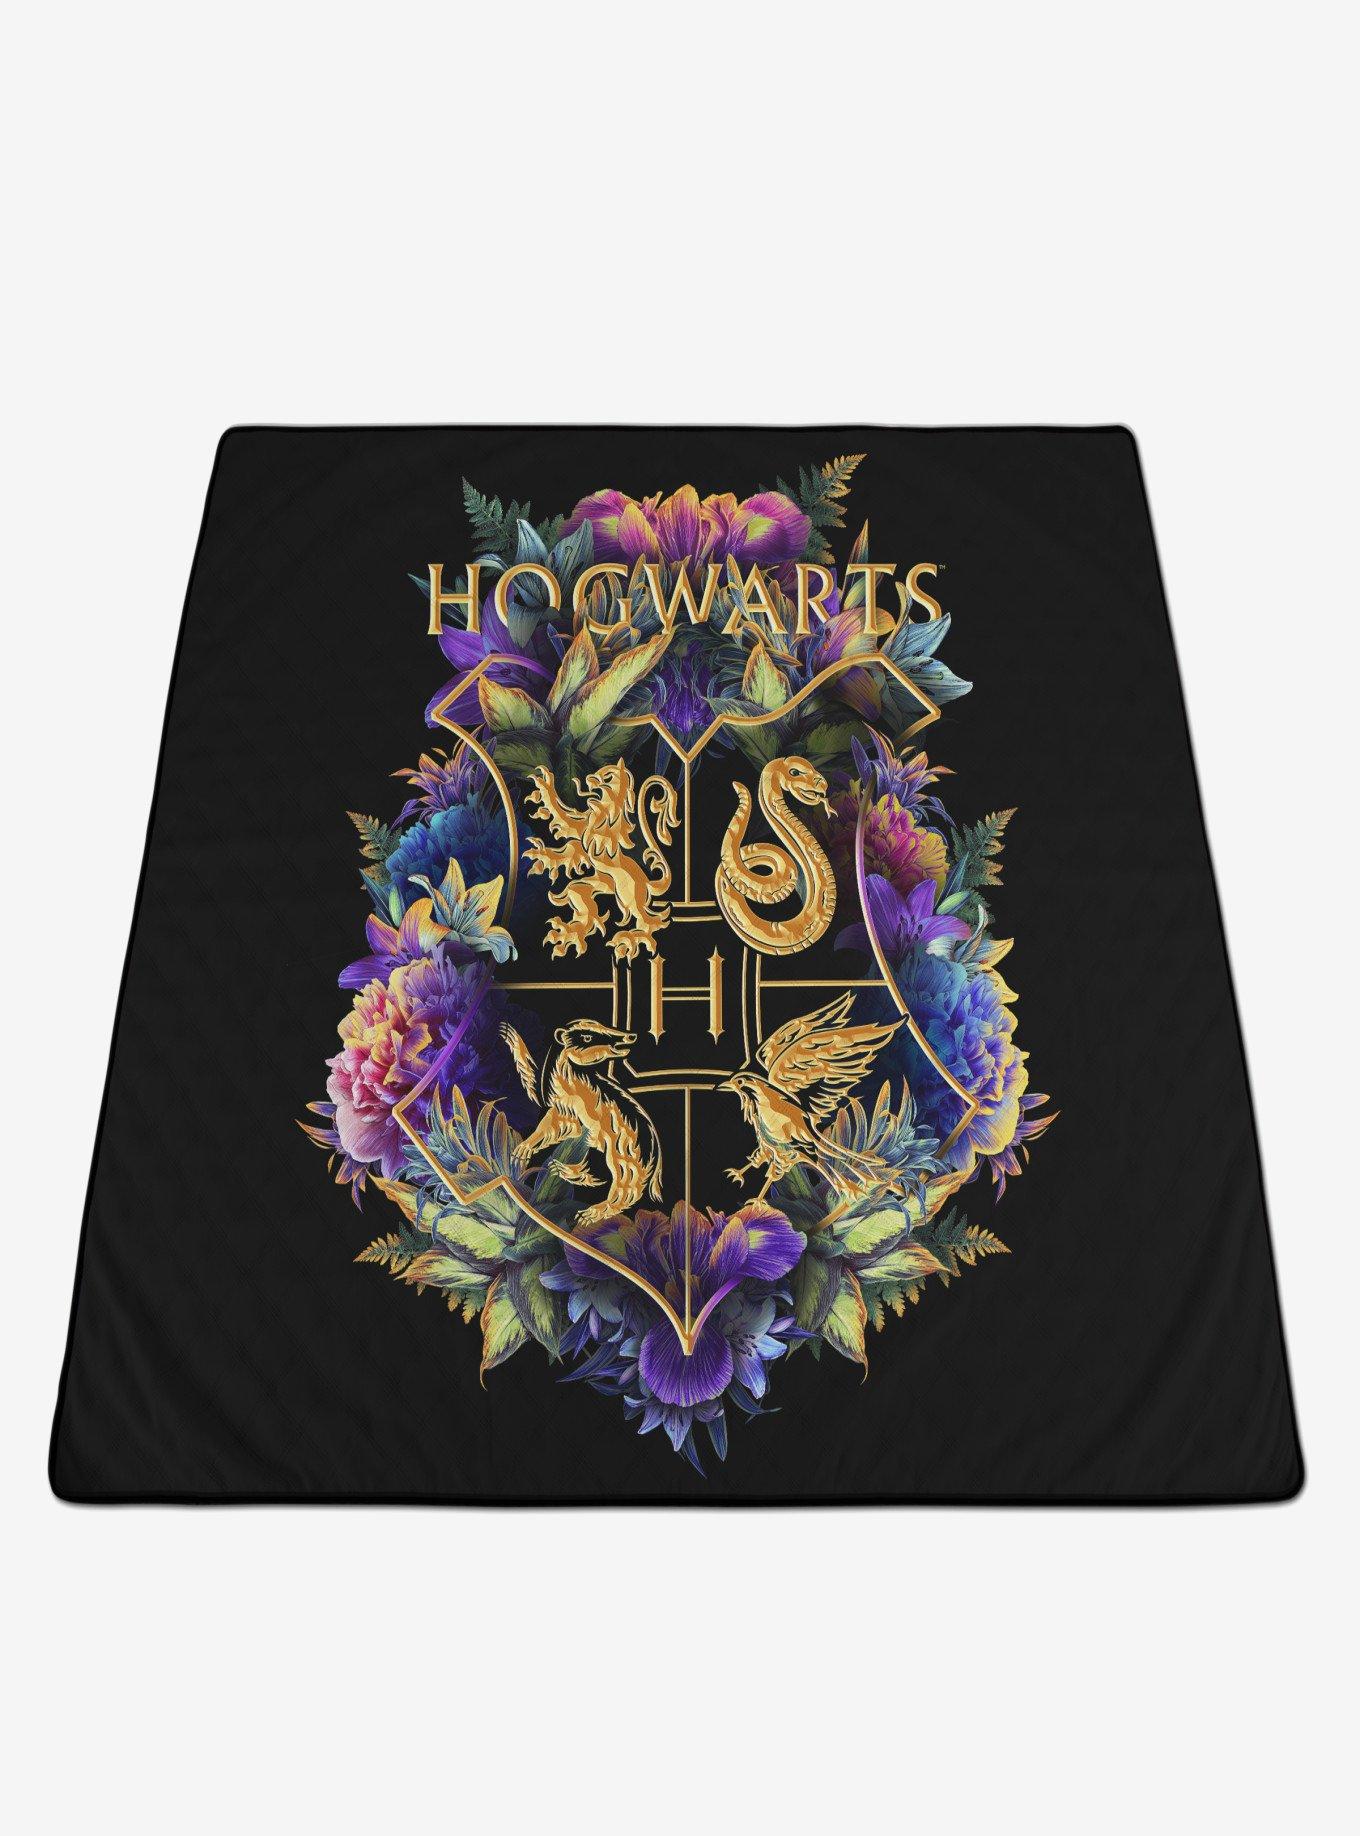 Harry Potter Hogwarts Impresa Picnic Blanket